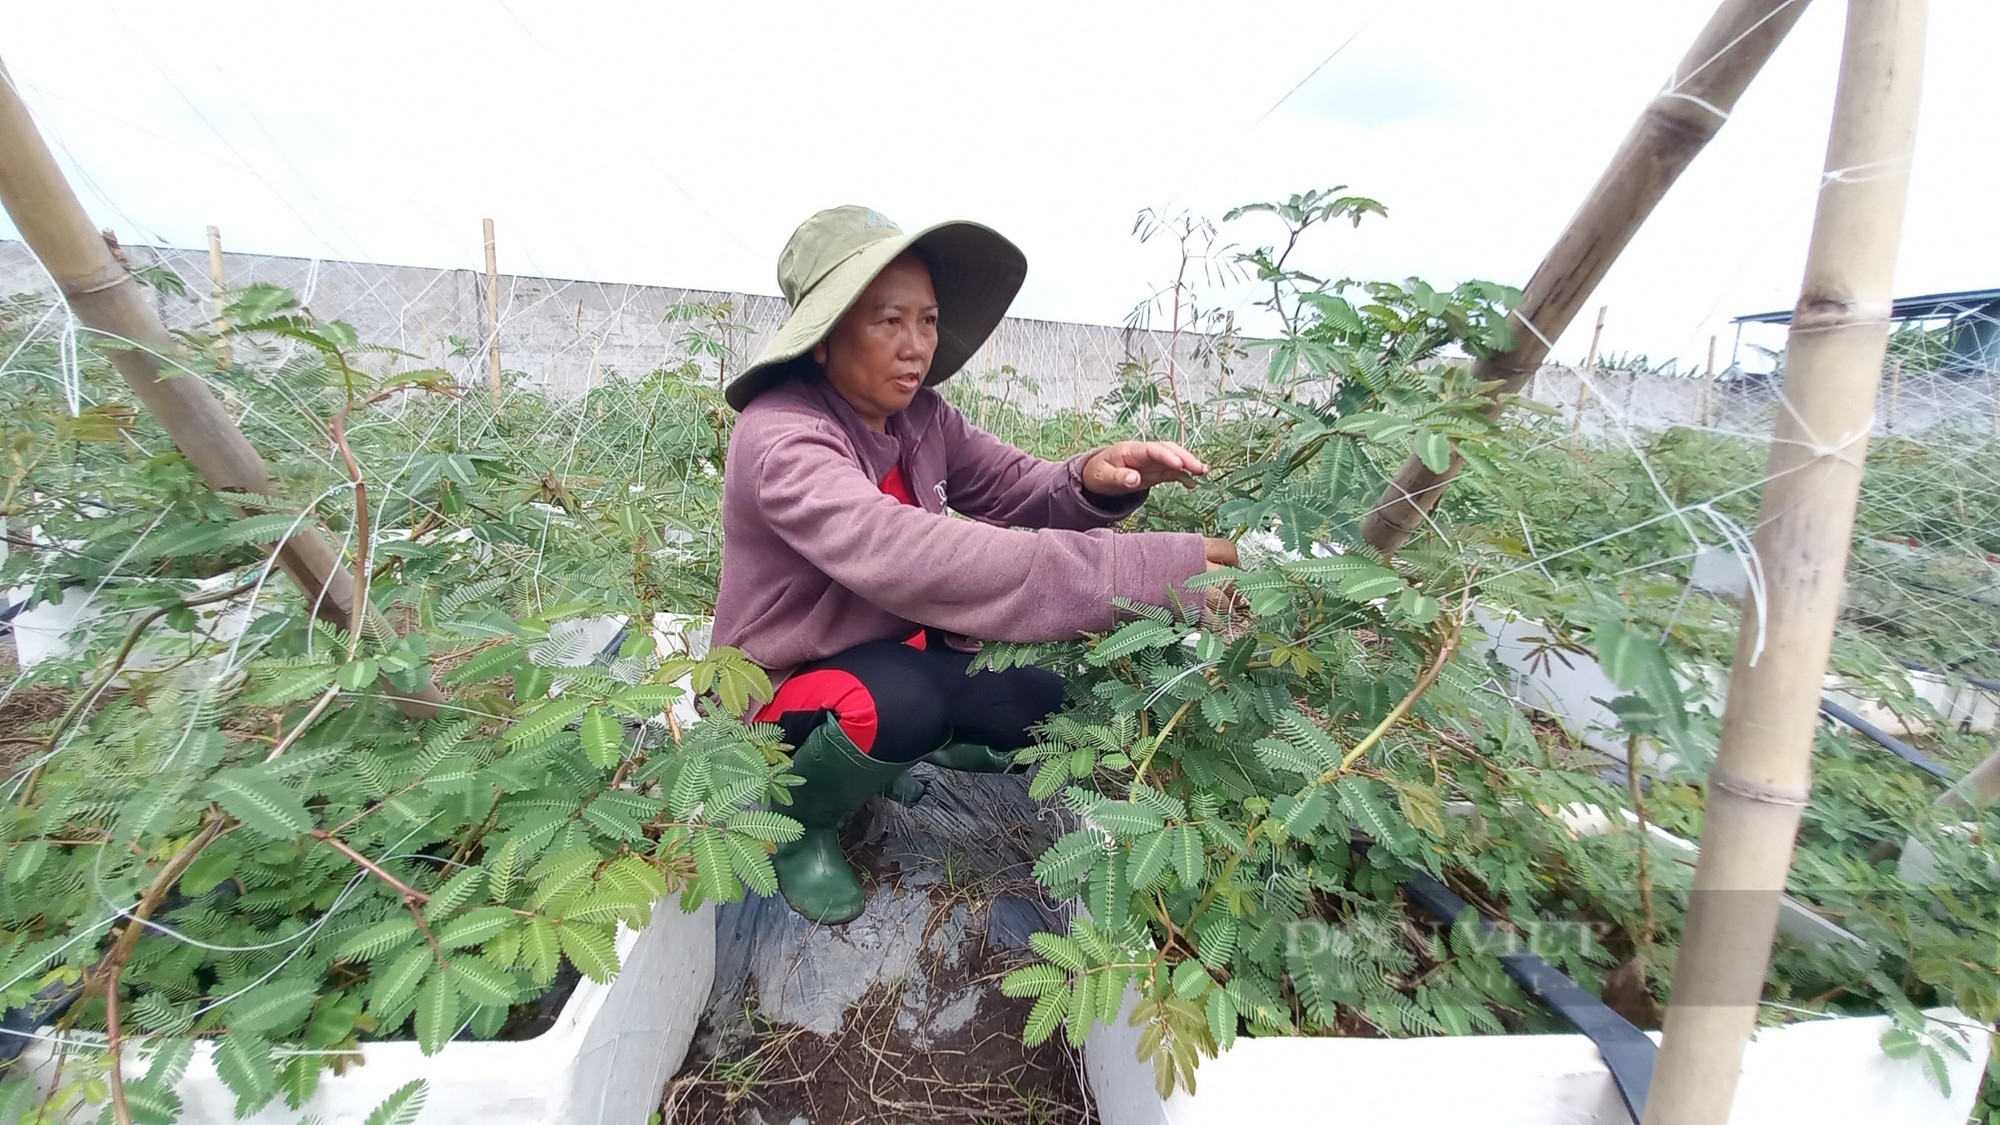 Tuyệt chiêu đưa loại rau dại dưới nước lên cạn trồng, nữ nông dân Sài Gòn hái không kịp bán - Ảnh 4.